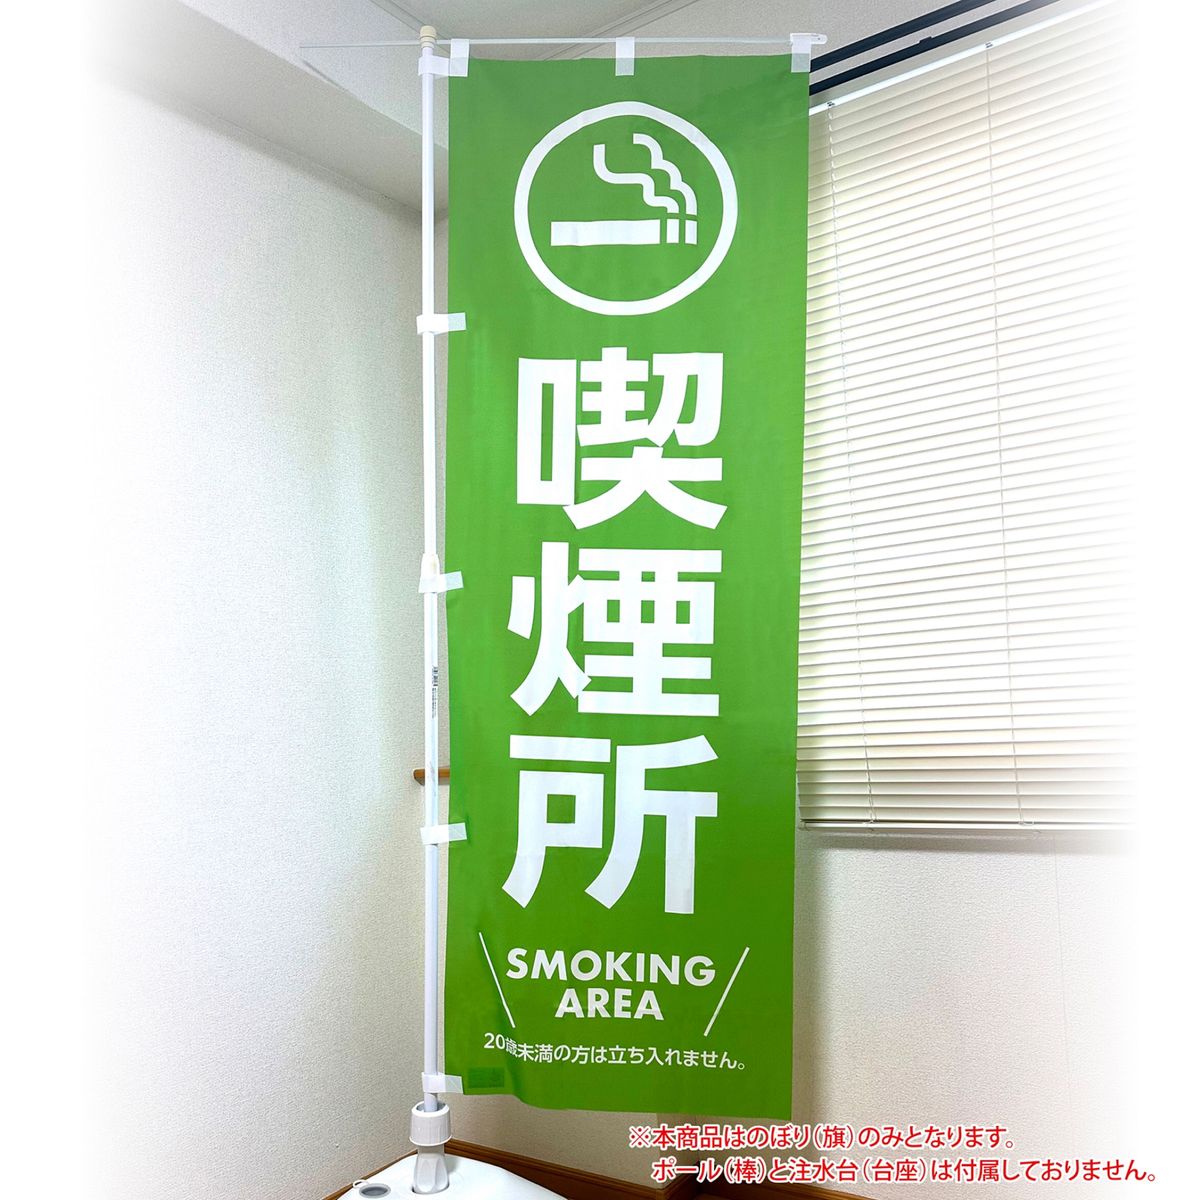 喫煙所のぼり旗 SMOKING AREA 〜イベント等の喫煙場所の案内幟として〜〈1枚〉新品